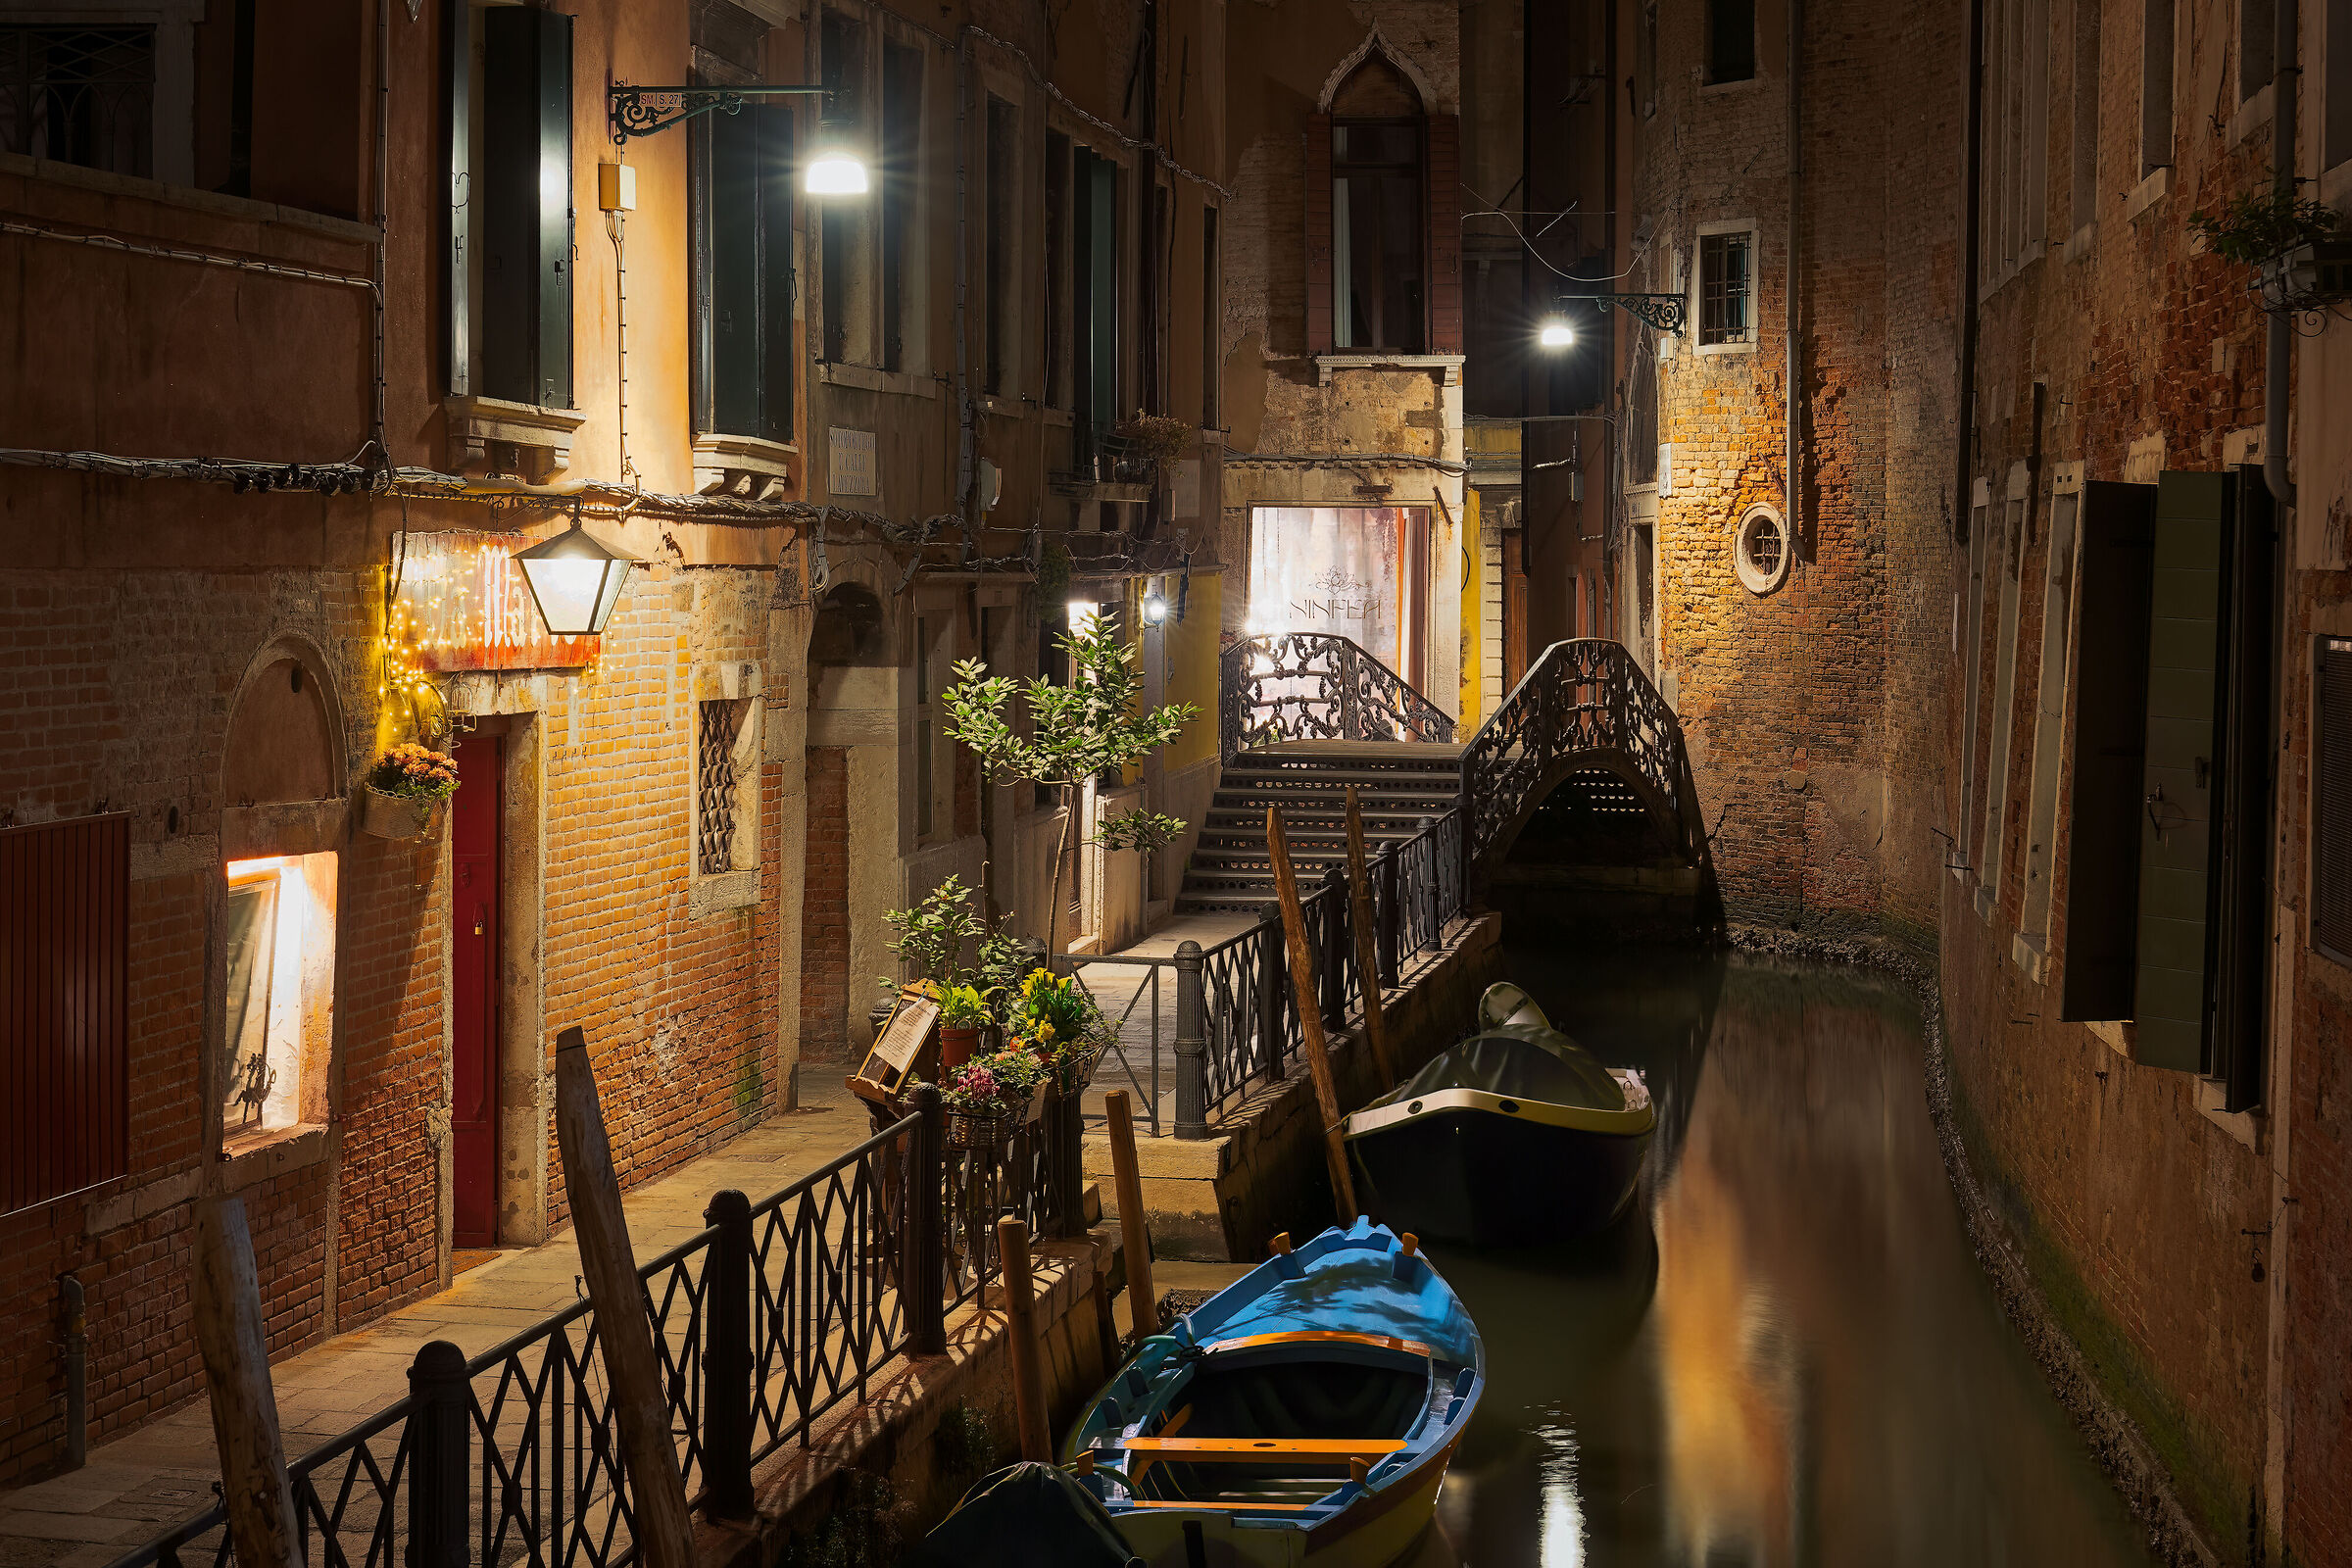 Una notte silenziosa a Venezia...